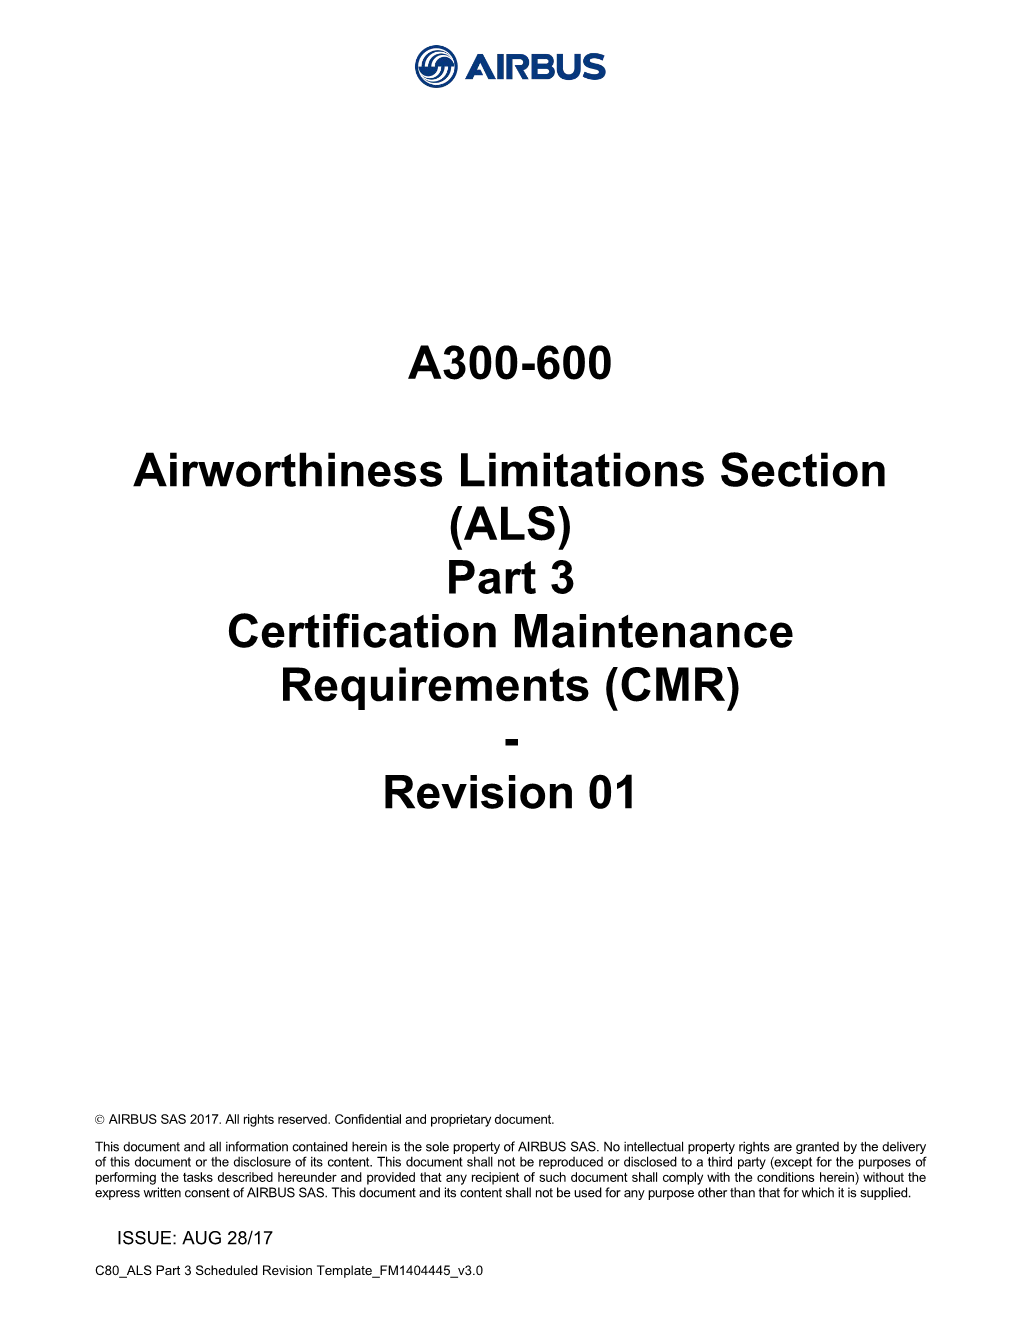 A300-600 ALS Part 3 Revision 01